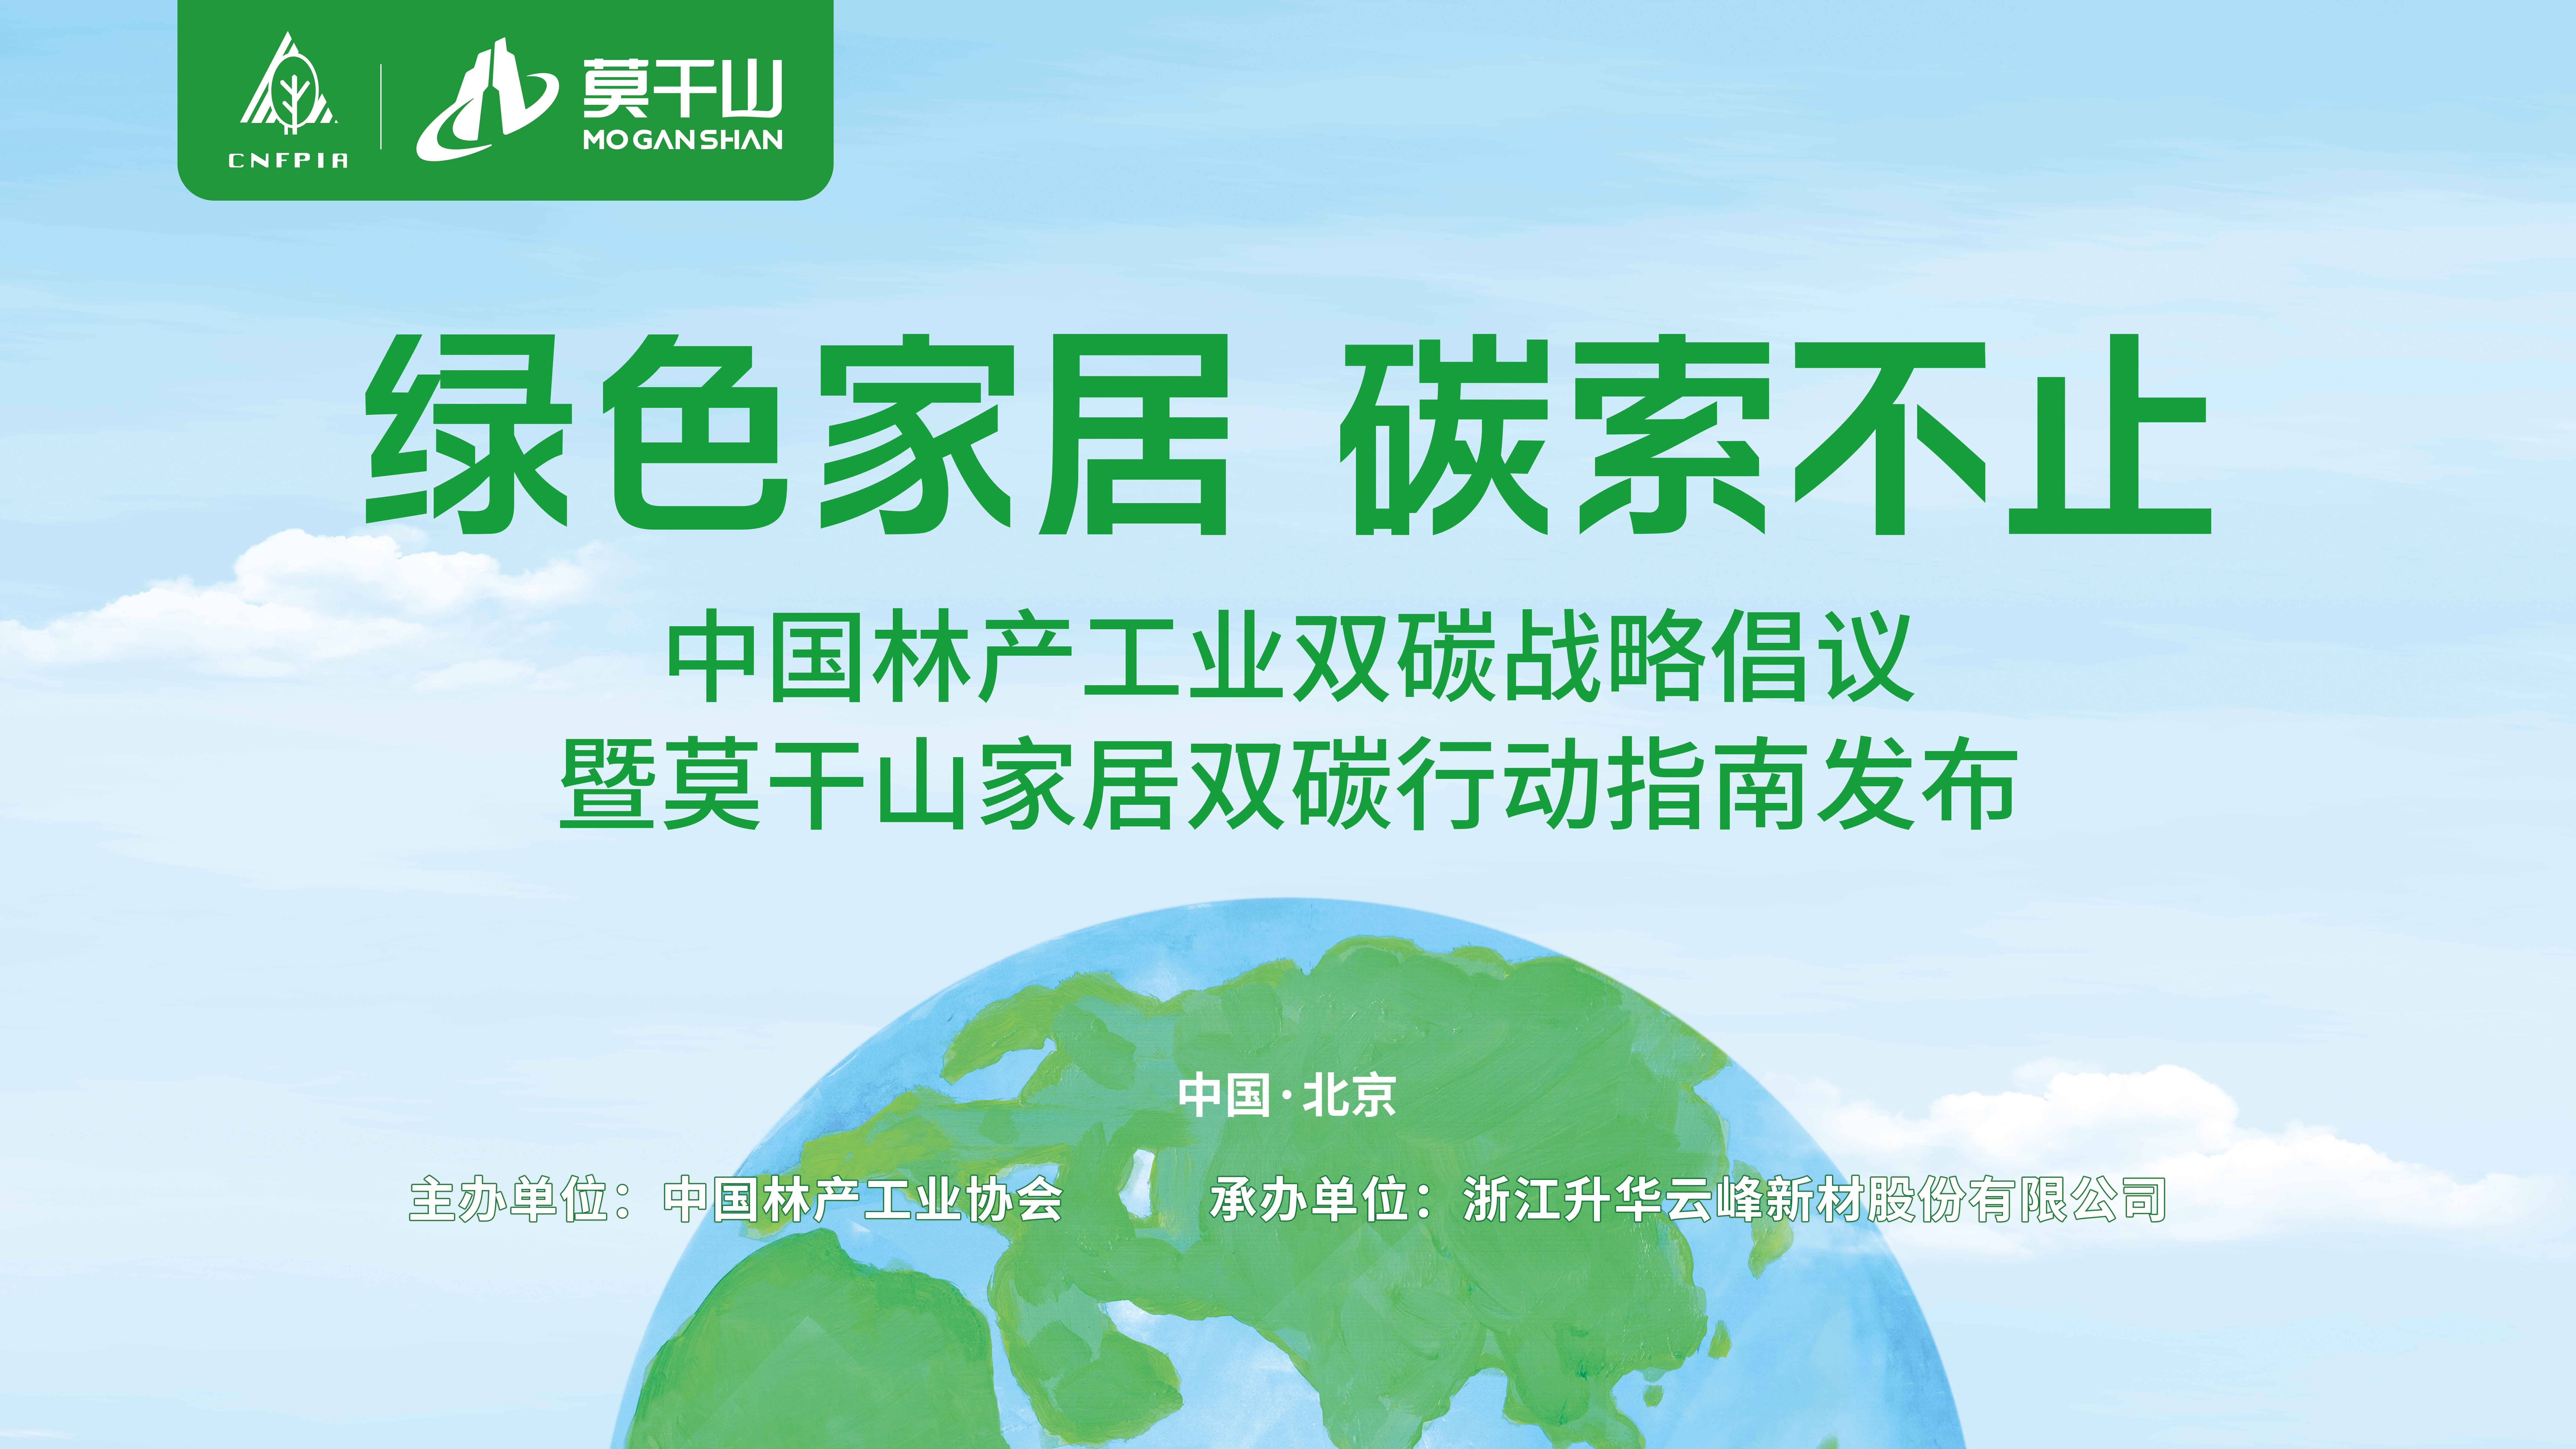 2023年11月19日，“中国林产工业双碳战略倡议暨莫干山家居双碳战略行动指南发布会”在北京饭店召开